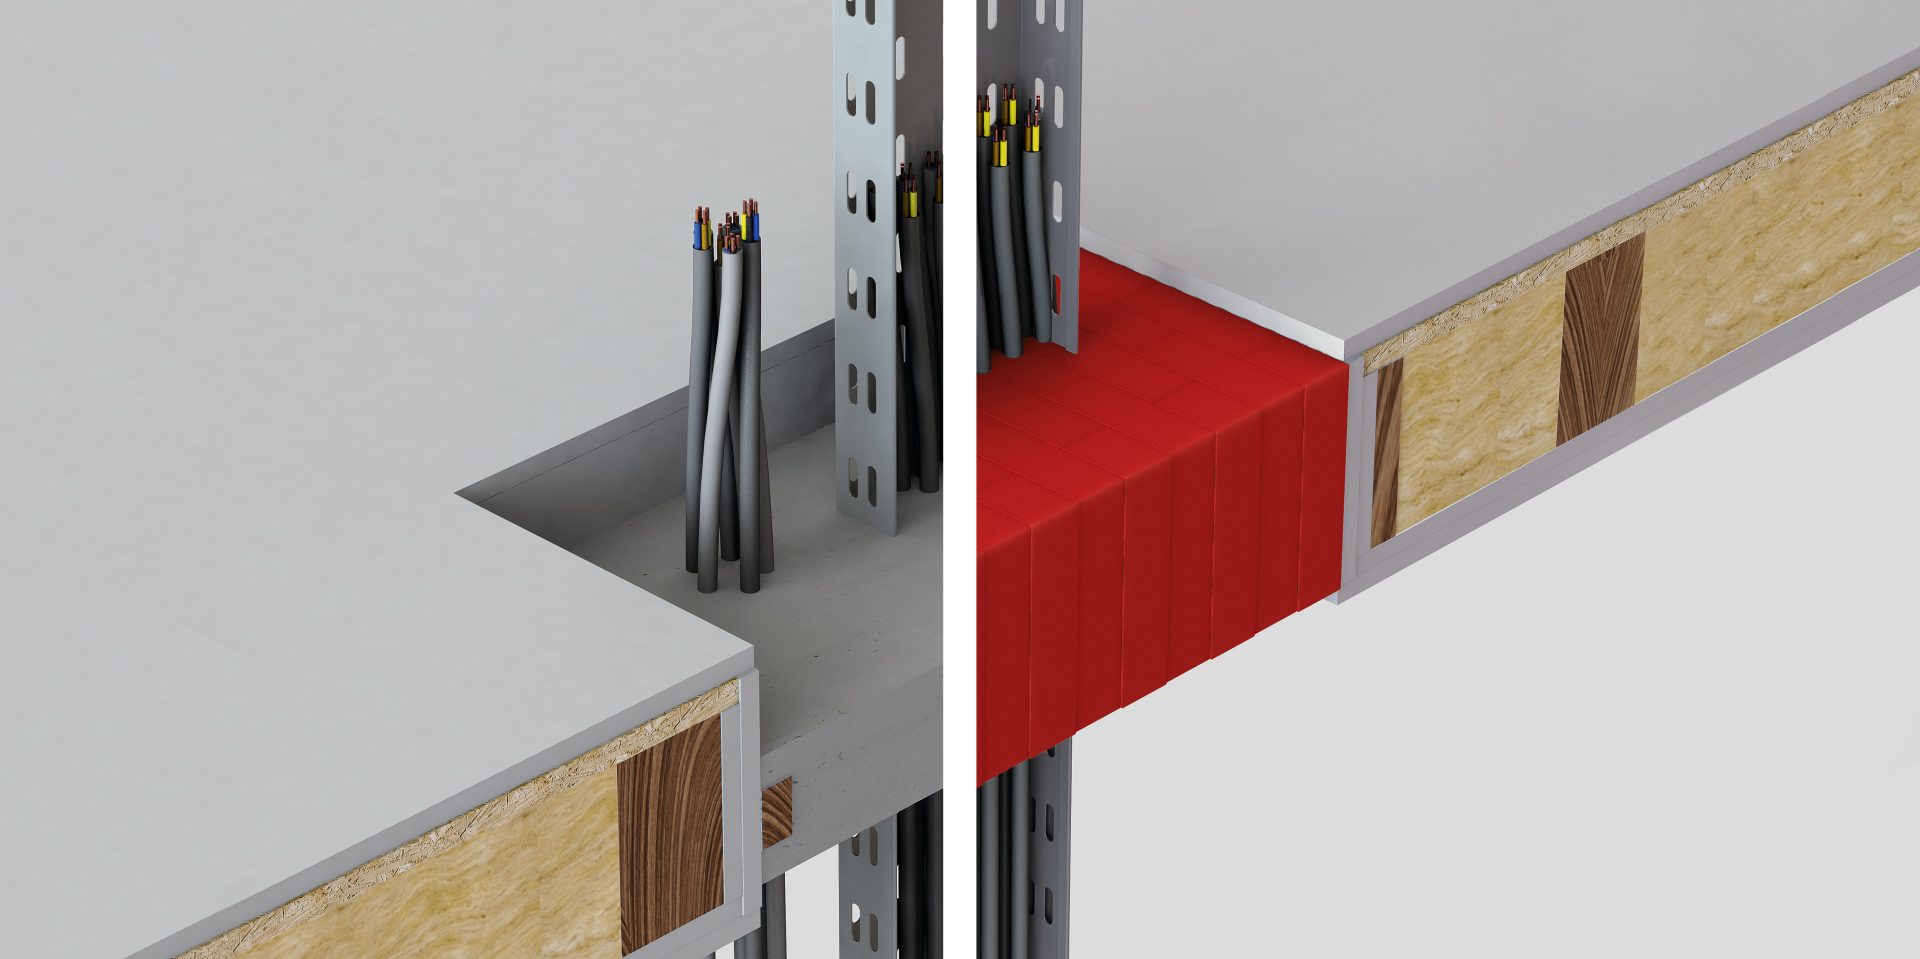 Comparación de una solución de resina tradicional (a la izquierda) y bloques de madera seca Hilti en rojo (a la derecha) a través de un suelo de madera laminada